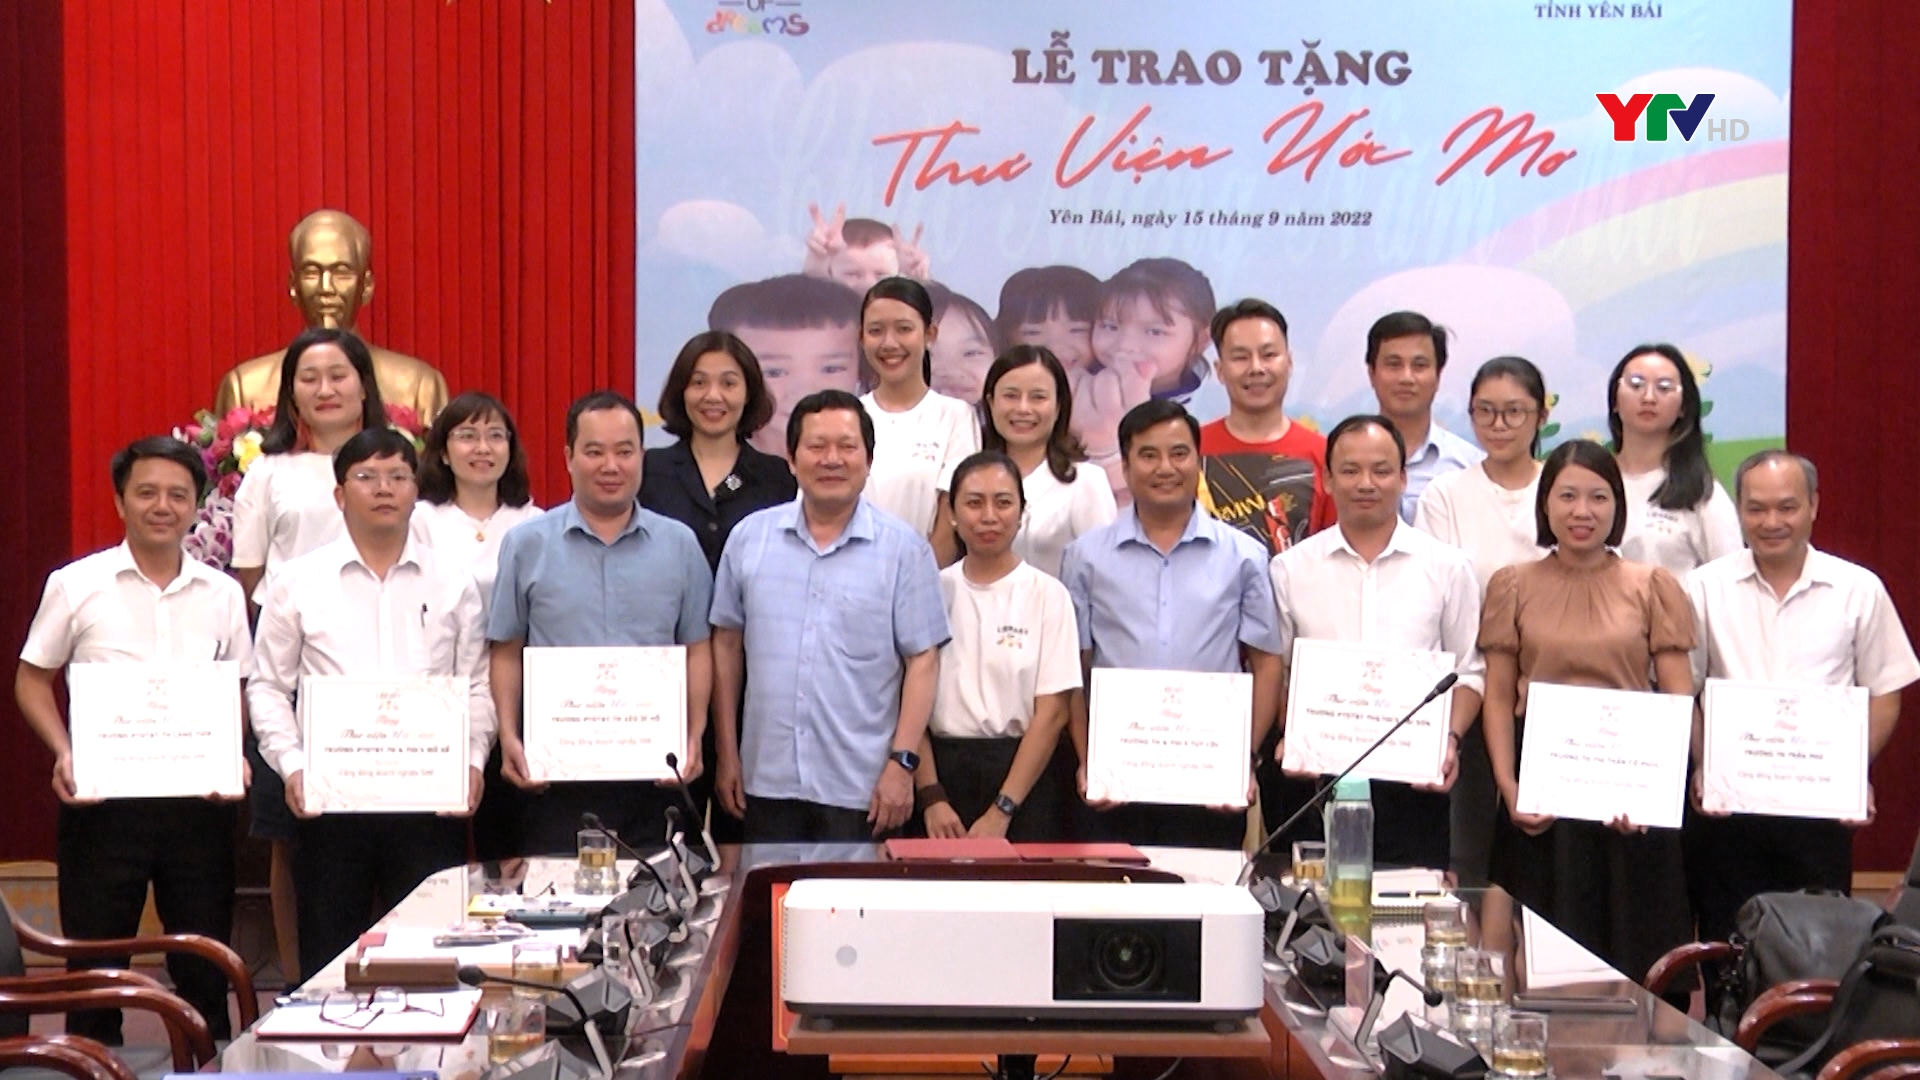 Công ty TNHH Xã hội Thư viện ước mơ trao tặng thư viện cho 7 trường học tại Yên Bái